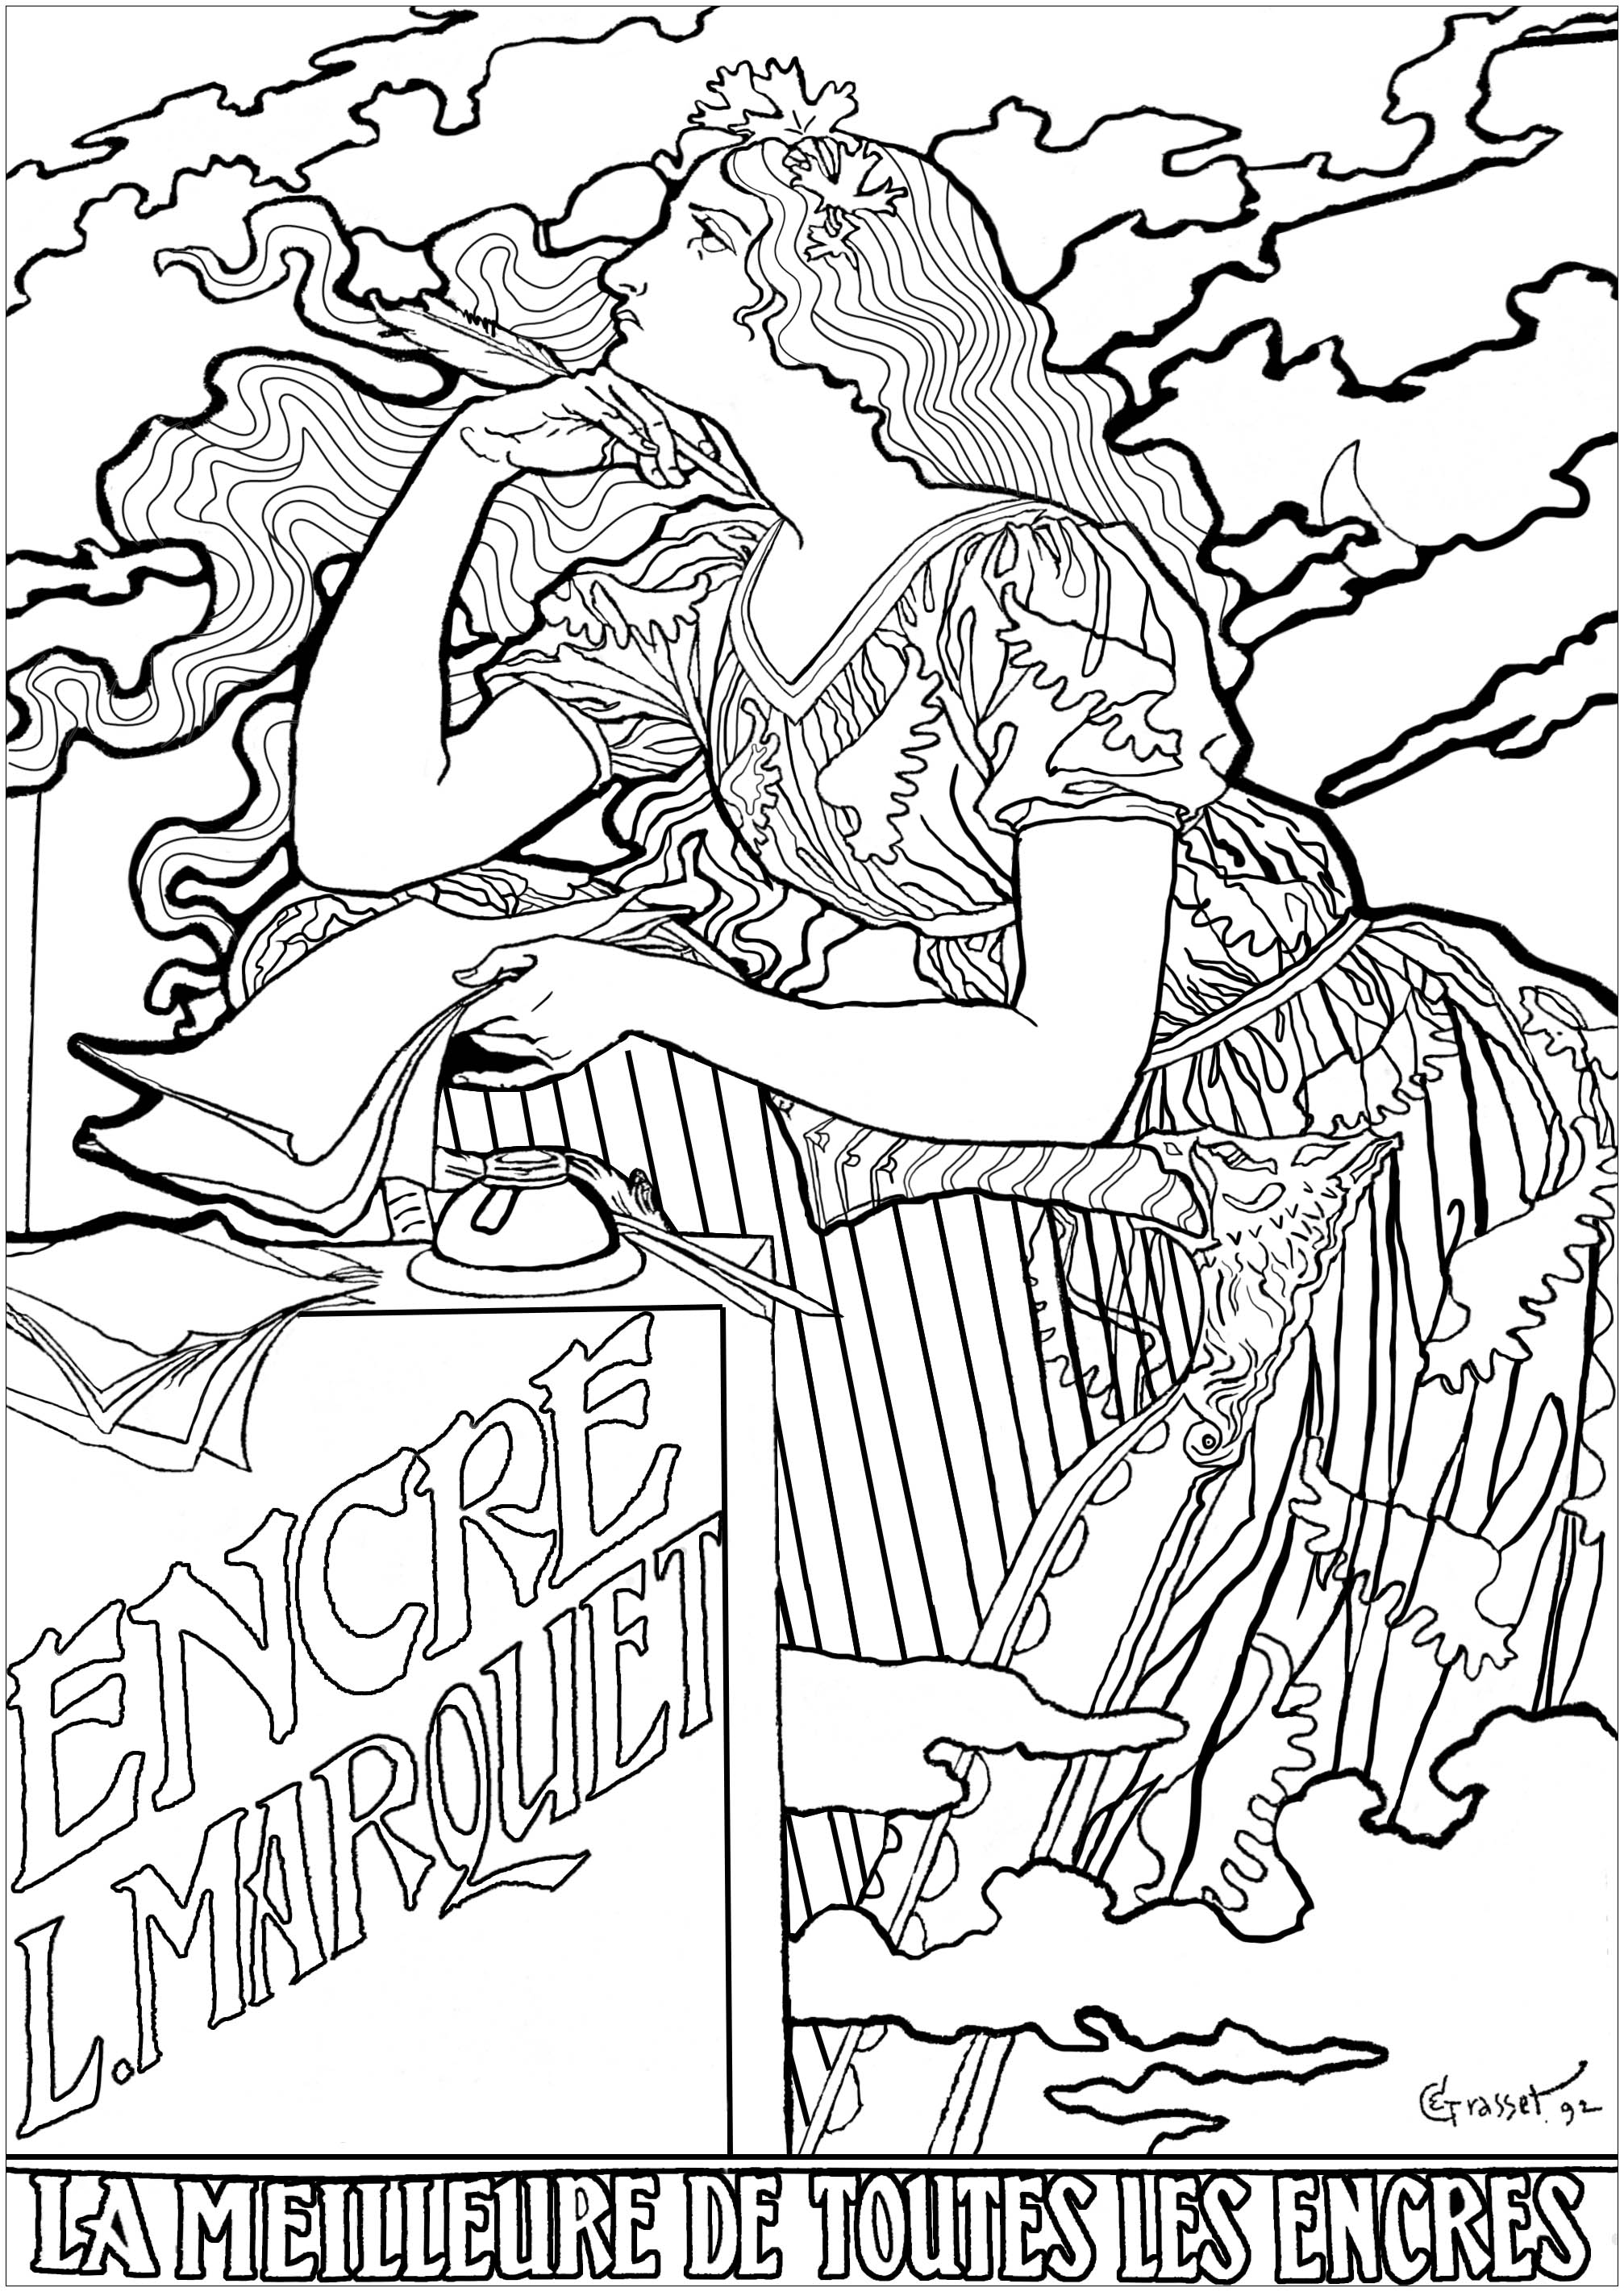 Eugène Grasset: Poster per gli inchiostri L. Marquet. Questa pagina da colorare è basata su un manifesto pubblicitario del 1892, creato da Eugène Grasset per una marca di inchiostro e altamente rappresentativo dello stile Art Nouveau, Artista : Olivier